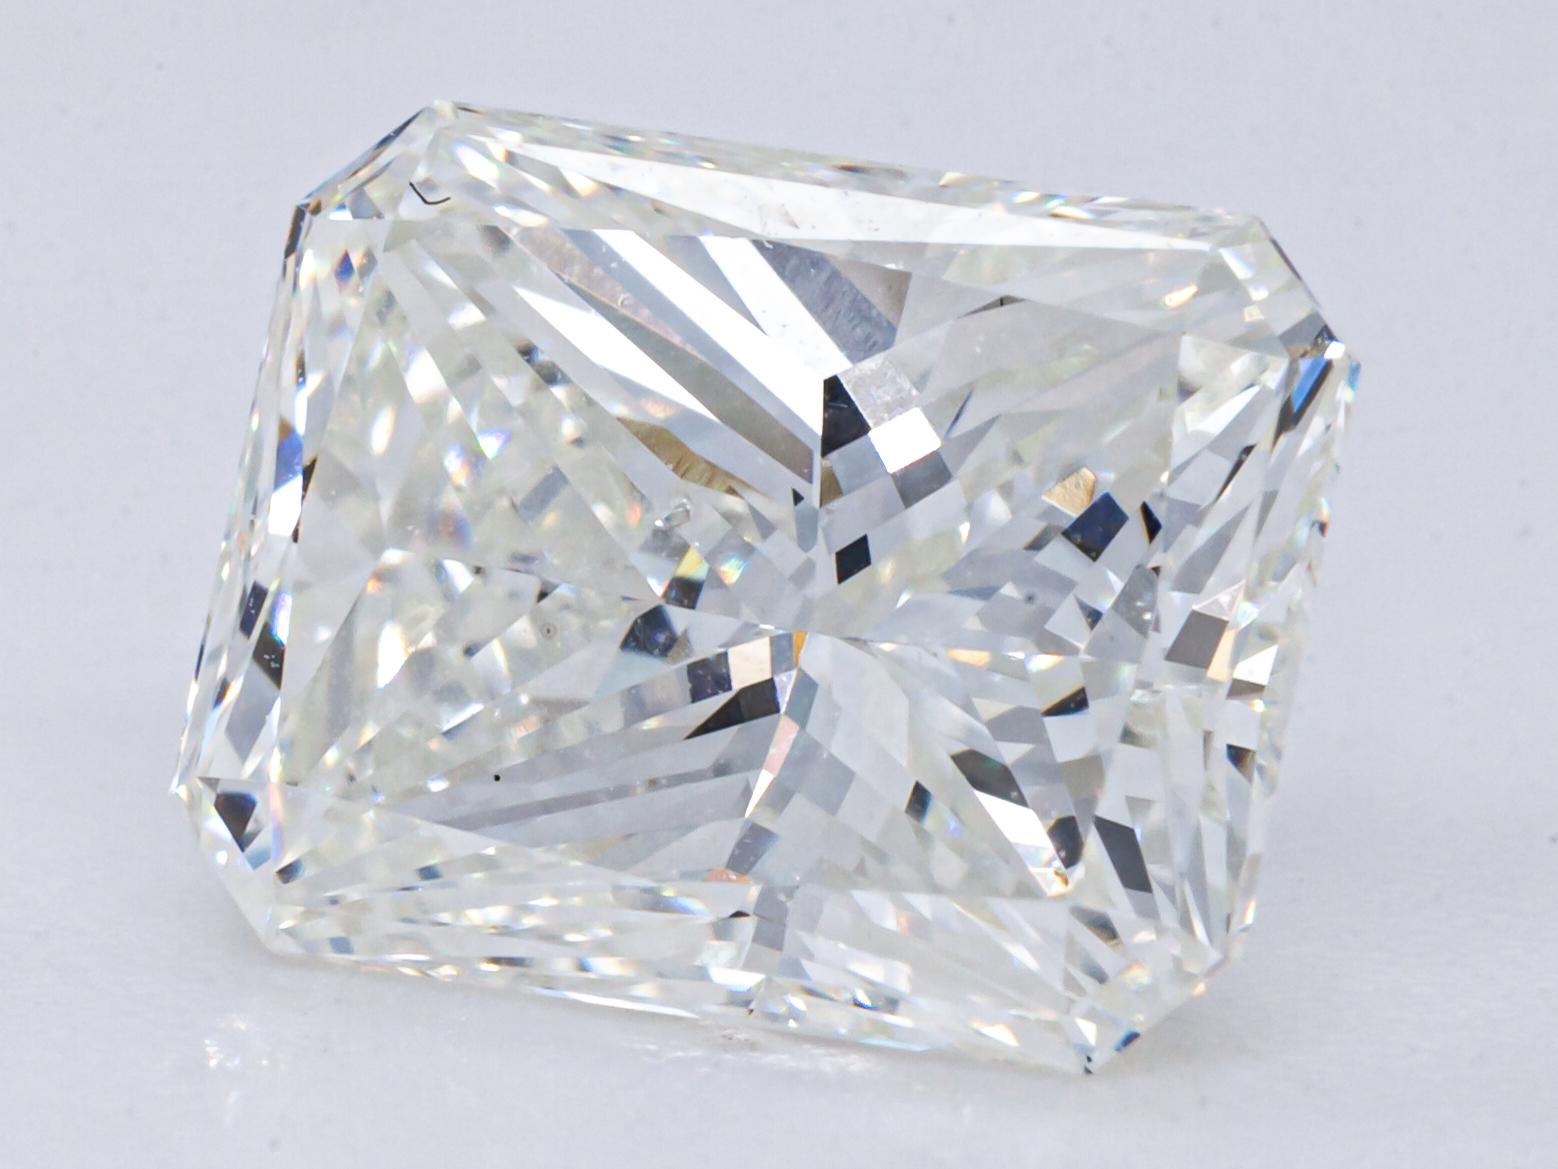 2,07 carats de diamant brut H /SI1 taille radiant certifié GIA

Informations générales sur le diamant
Taille du diamant : Radiant
Dimensions : 8.30  x  6.33  -  4.83

Résultats de la classification des diamants
Poids en carats : 2,07
Grade de